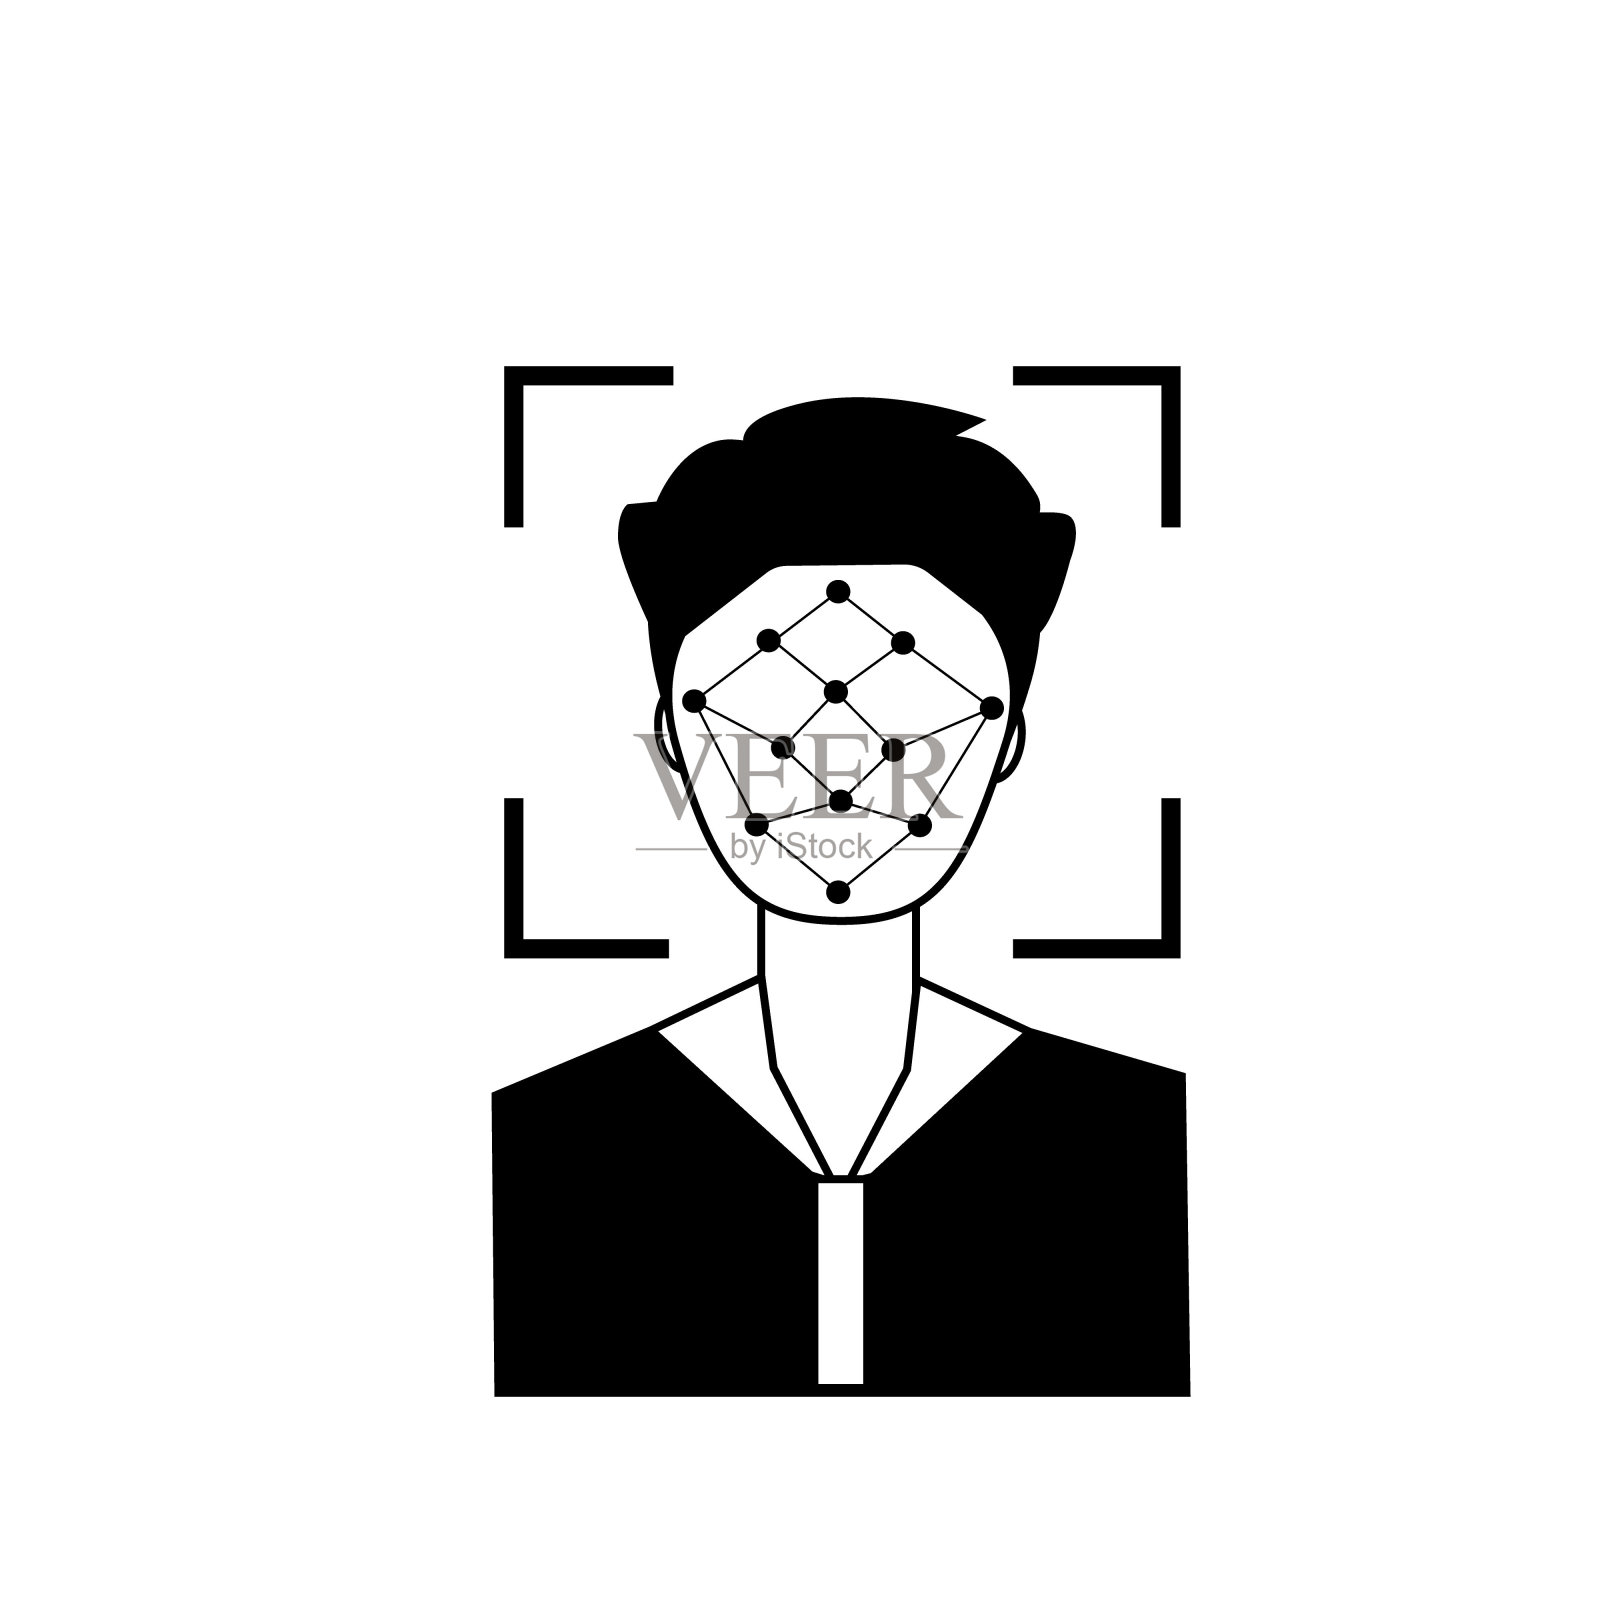 识别摄像头里的男性头部剪影。人脸扫描系统识别轮廓图标。生物识别的概念。现代设备中的人体验证技术插画图片素材